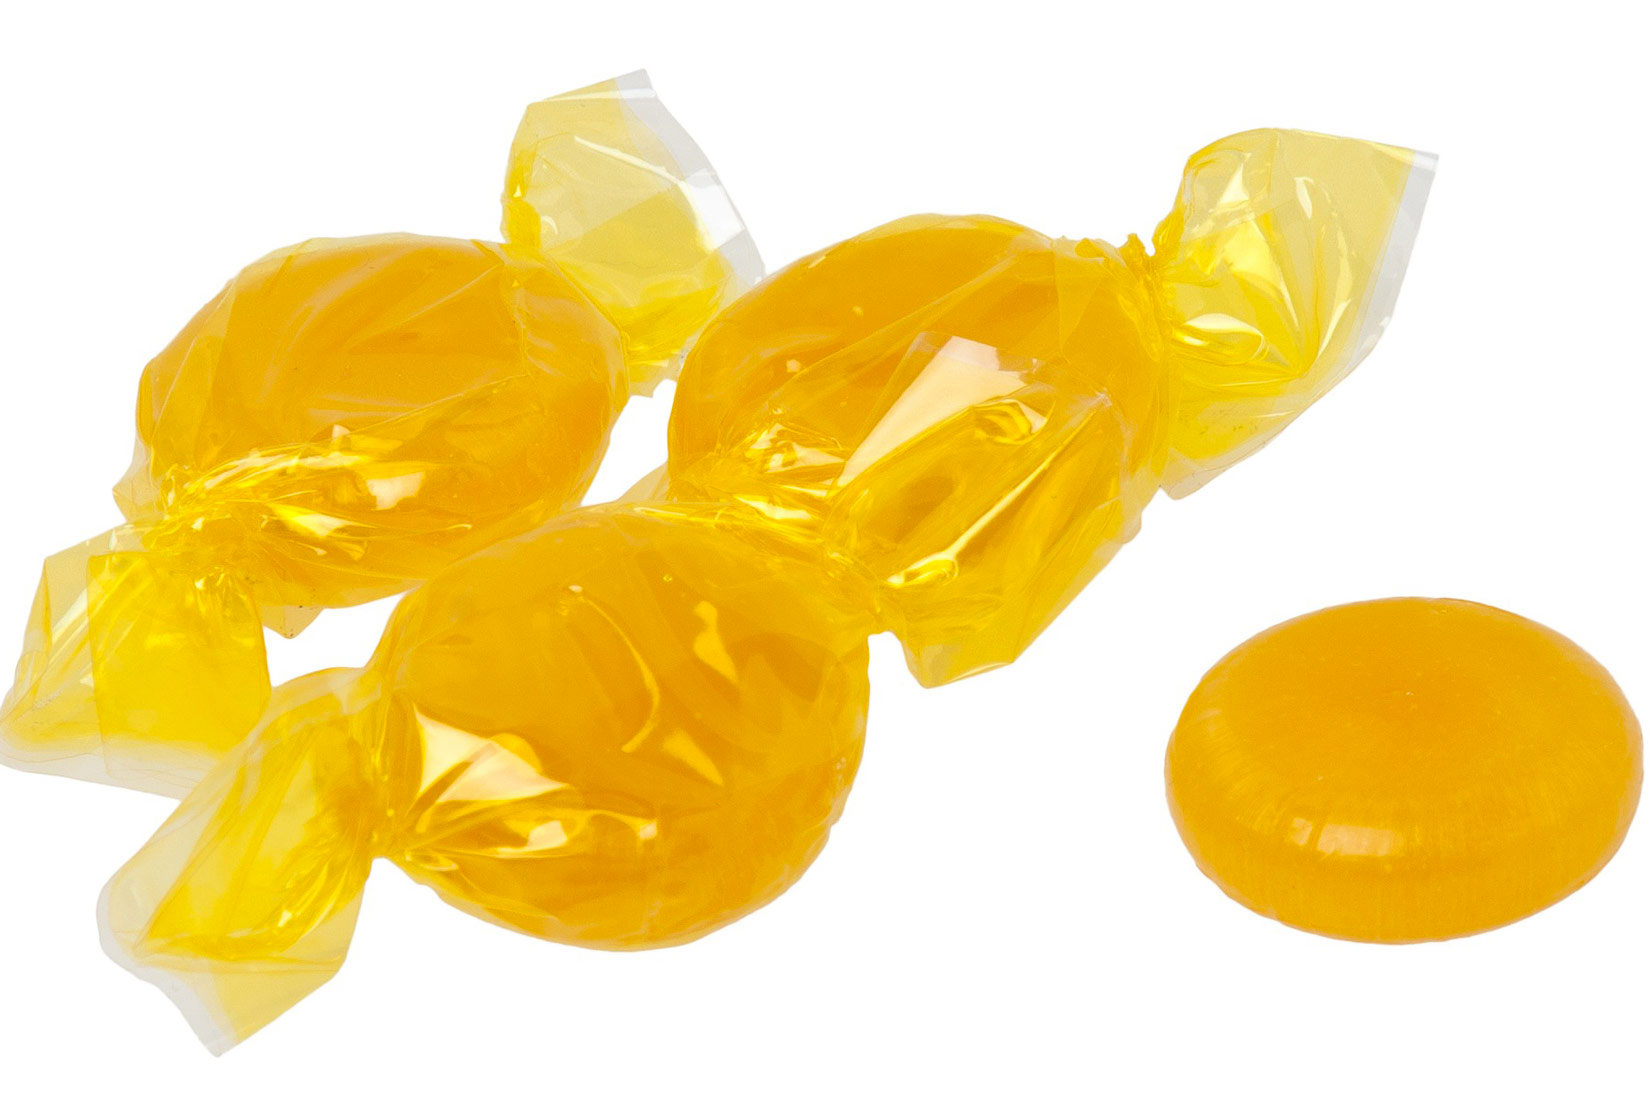 Fotografija prikazuje šećerne, tvrde bombone u žutim omotima